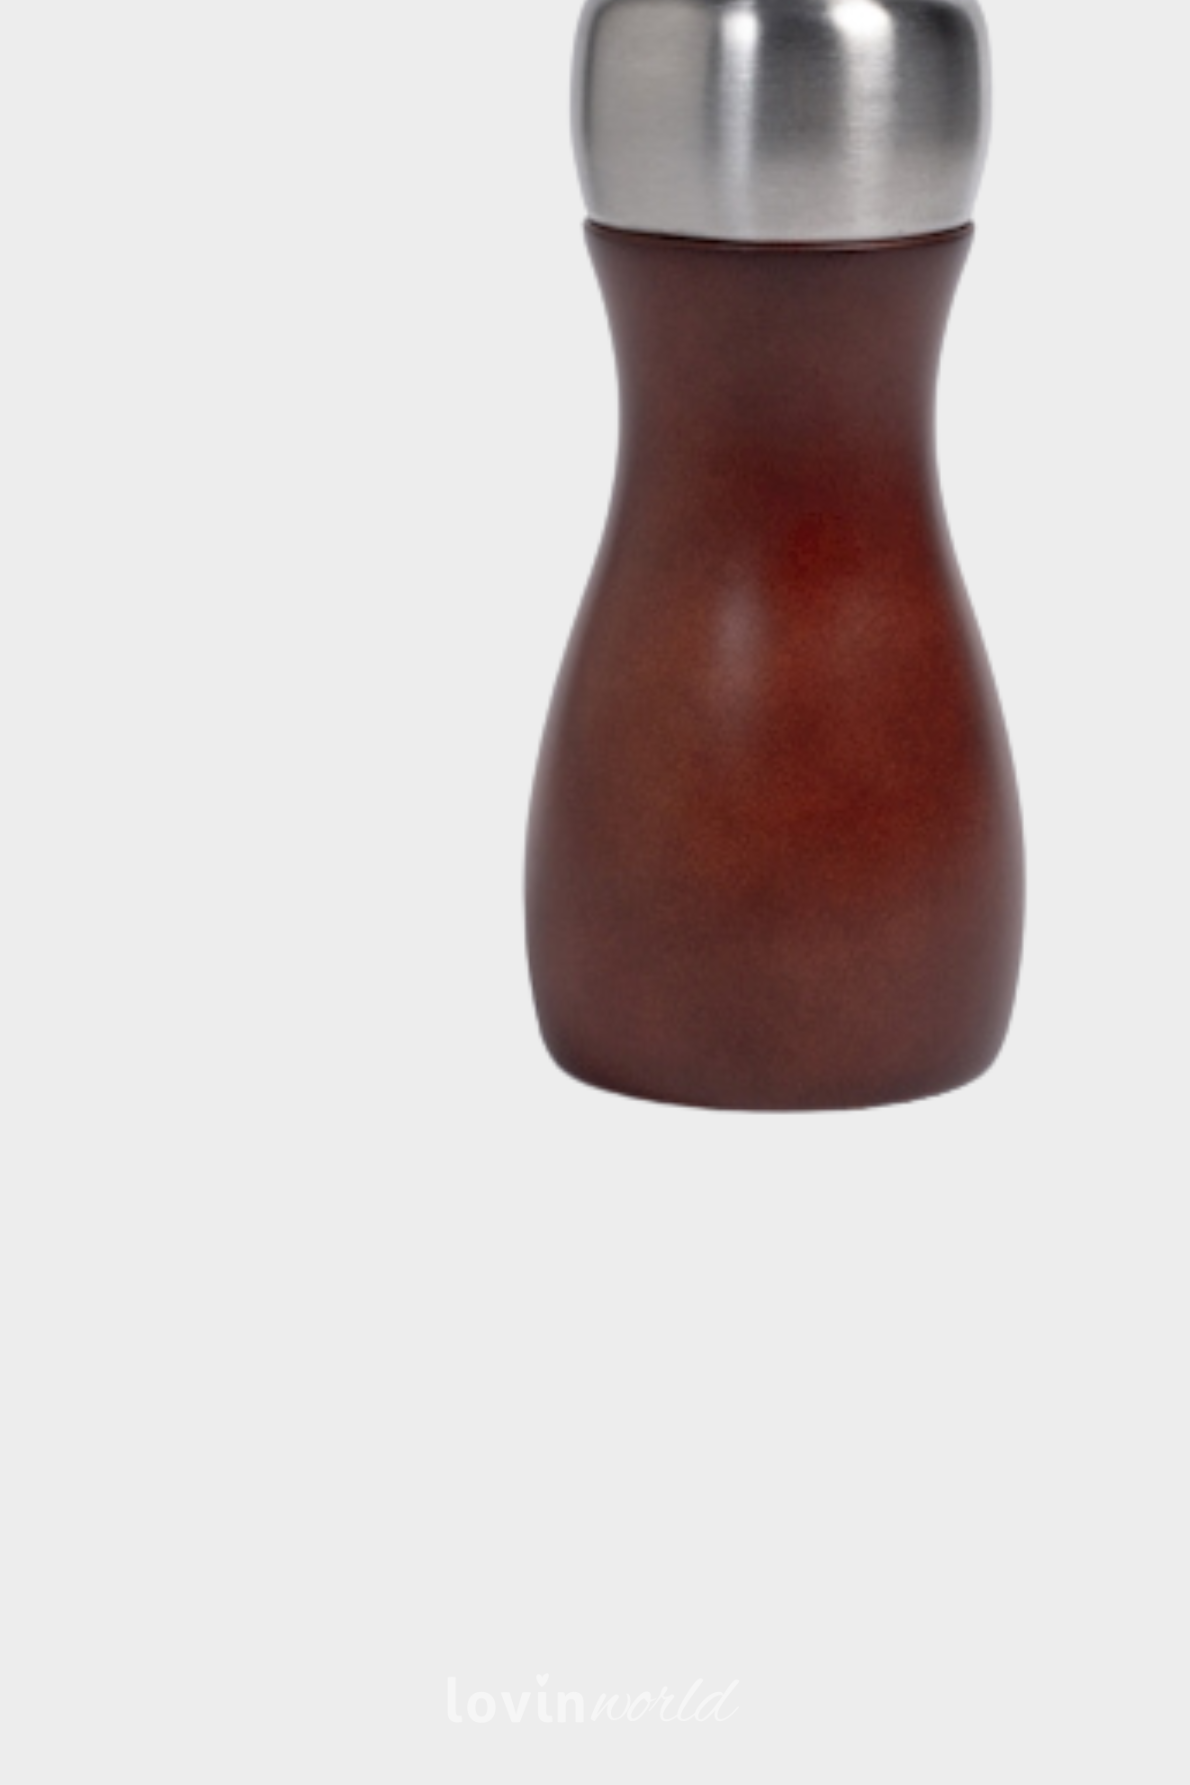 Macinasale/pepe in legno scuro con macina in ceramica 14 cm.-2